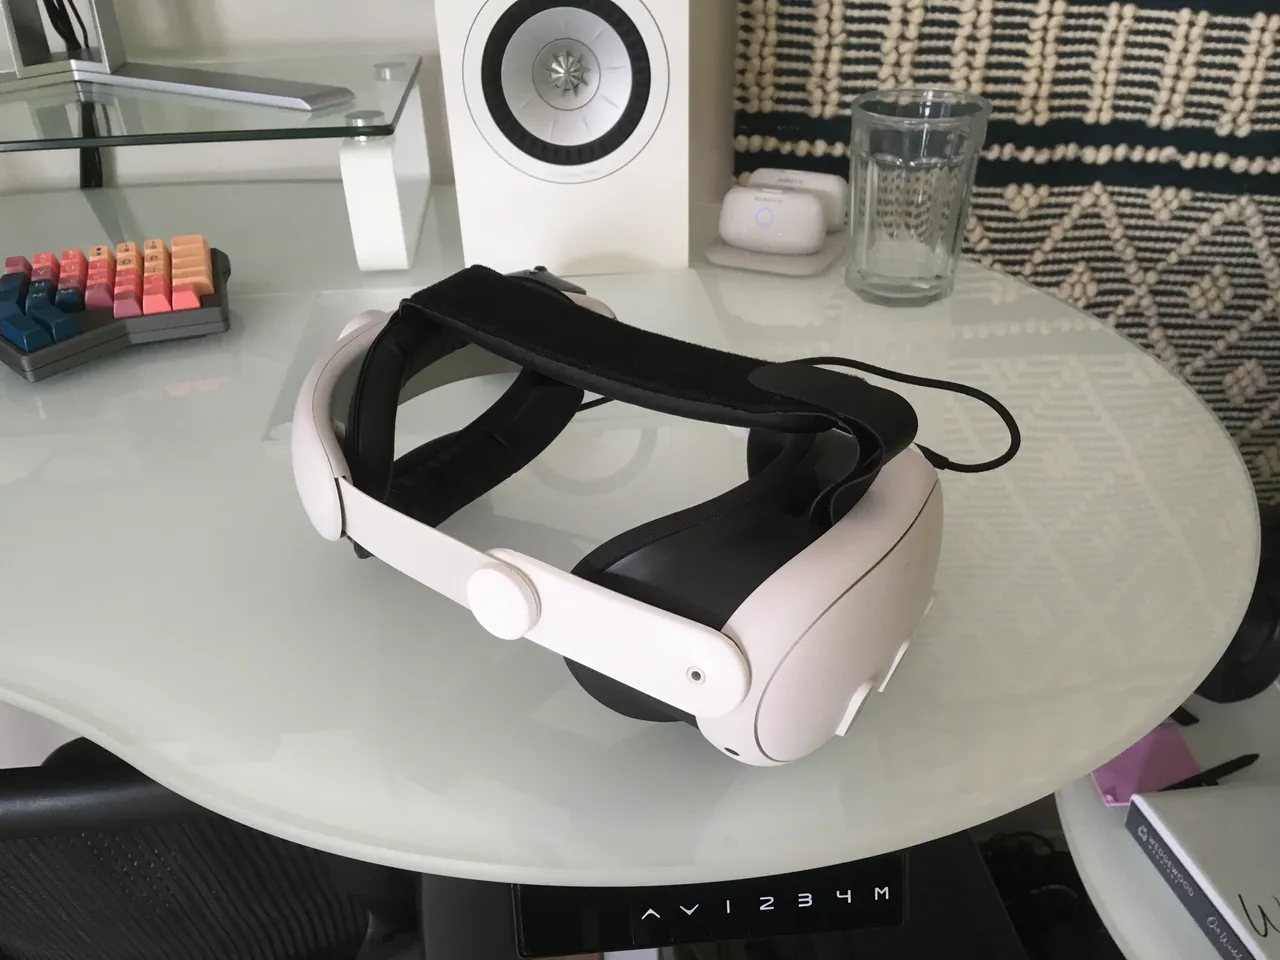 KIWI design Quest 3 Comfort Head Strap Review : r/oculus